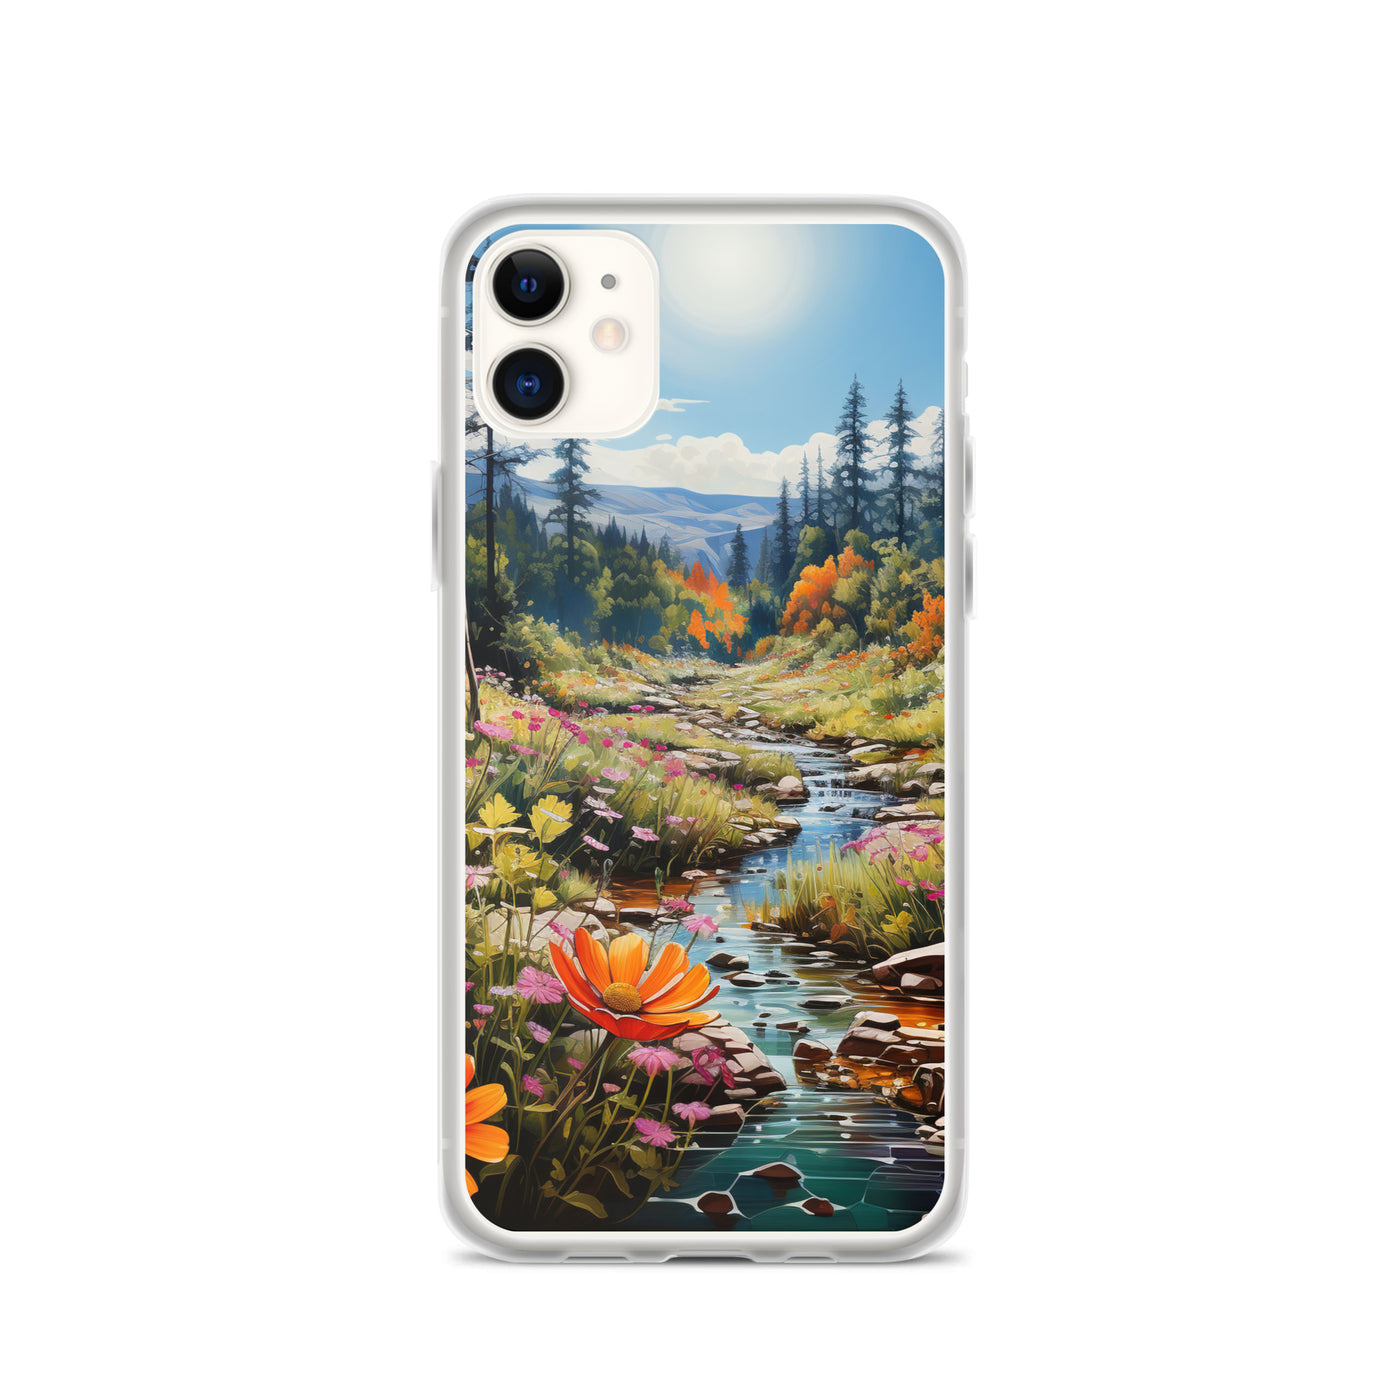 Berge, schöne Blumen und Bach im Wald - iPhone Schutzhülle (durchsichtig) berge xxx iPhone 11